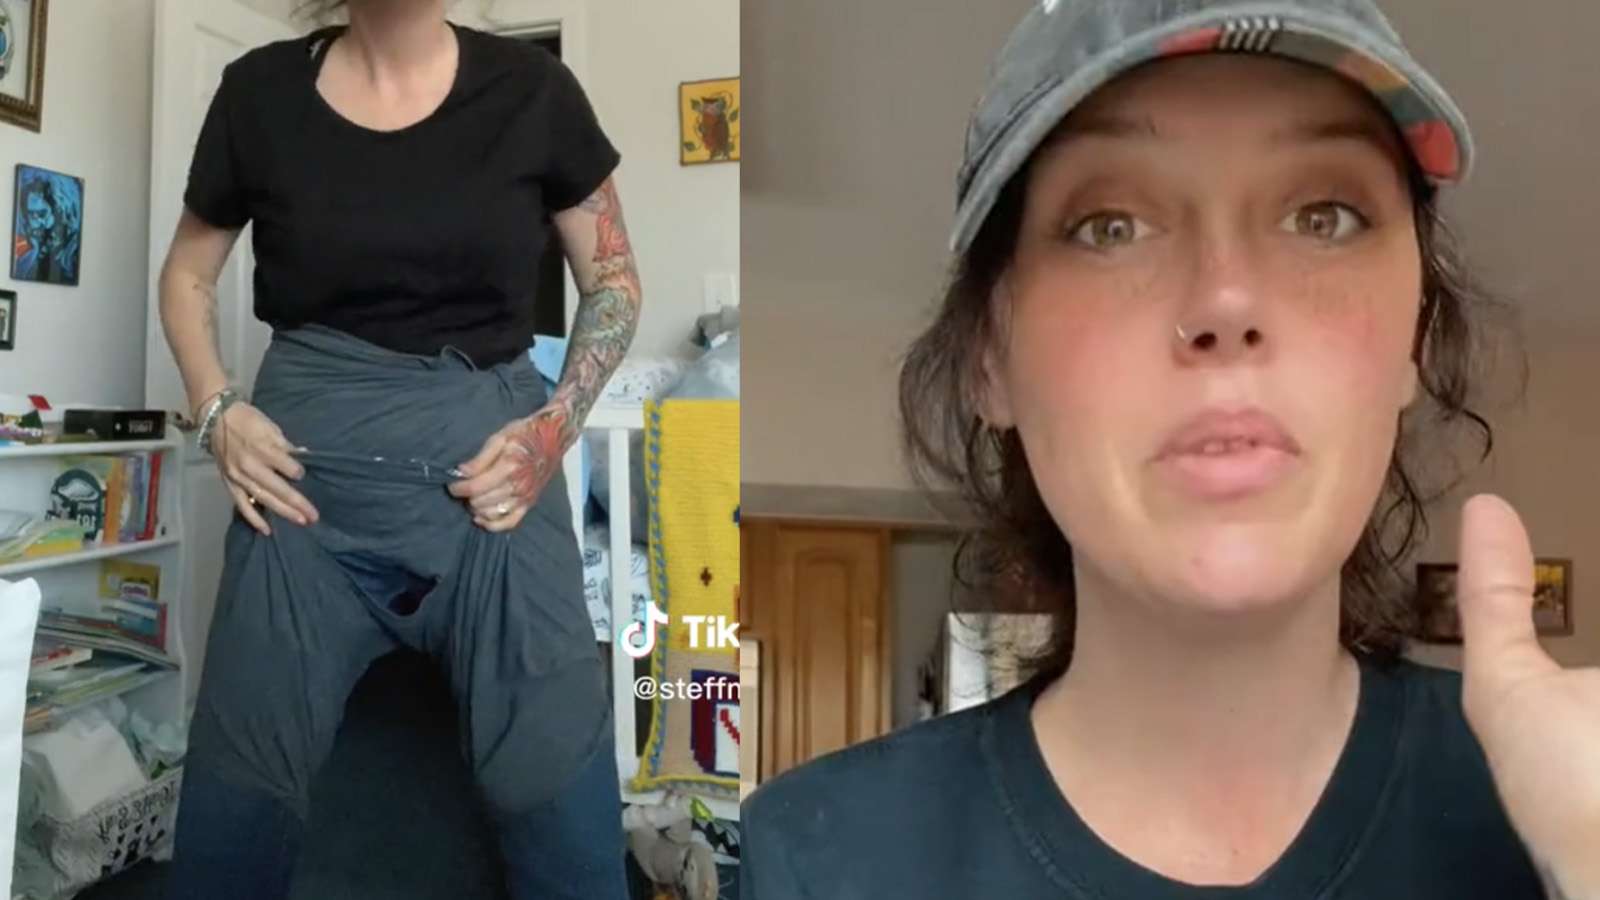 TikToker Steff McClay shows how her ex-boyfriend wore shirts as underwear.